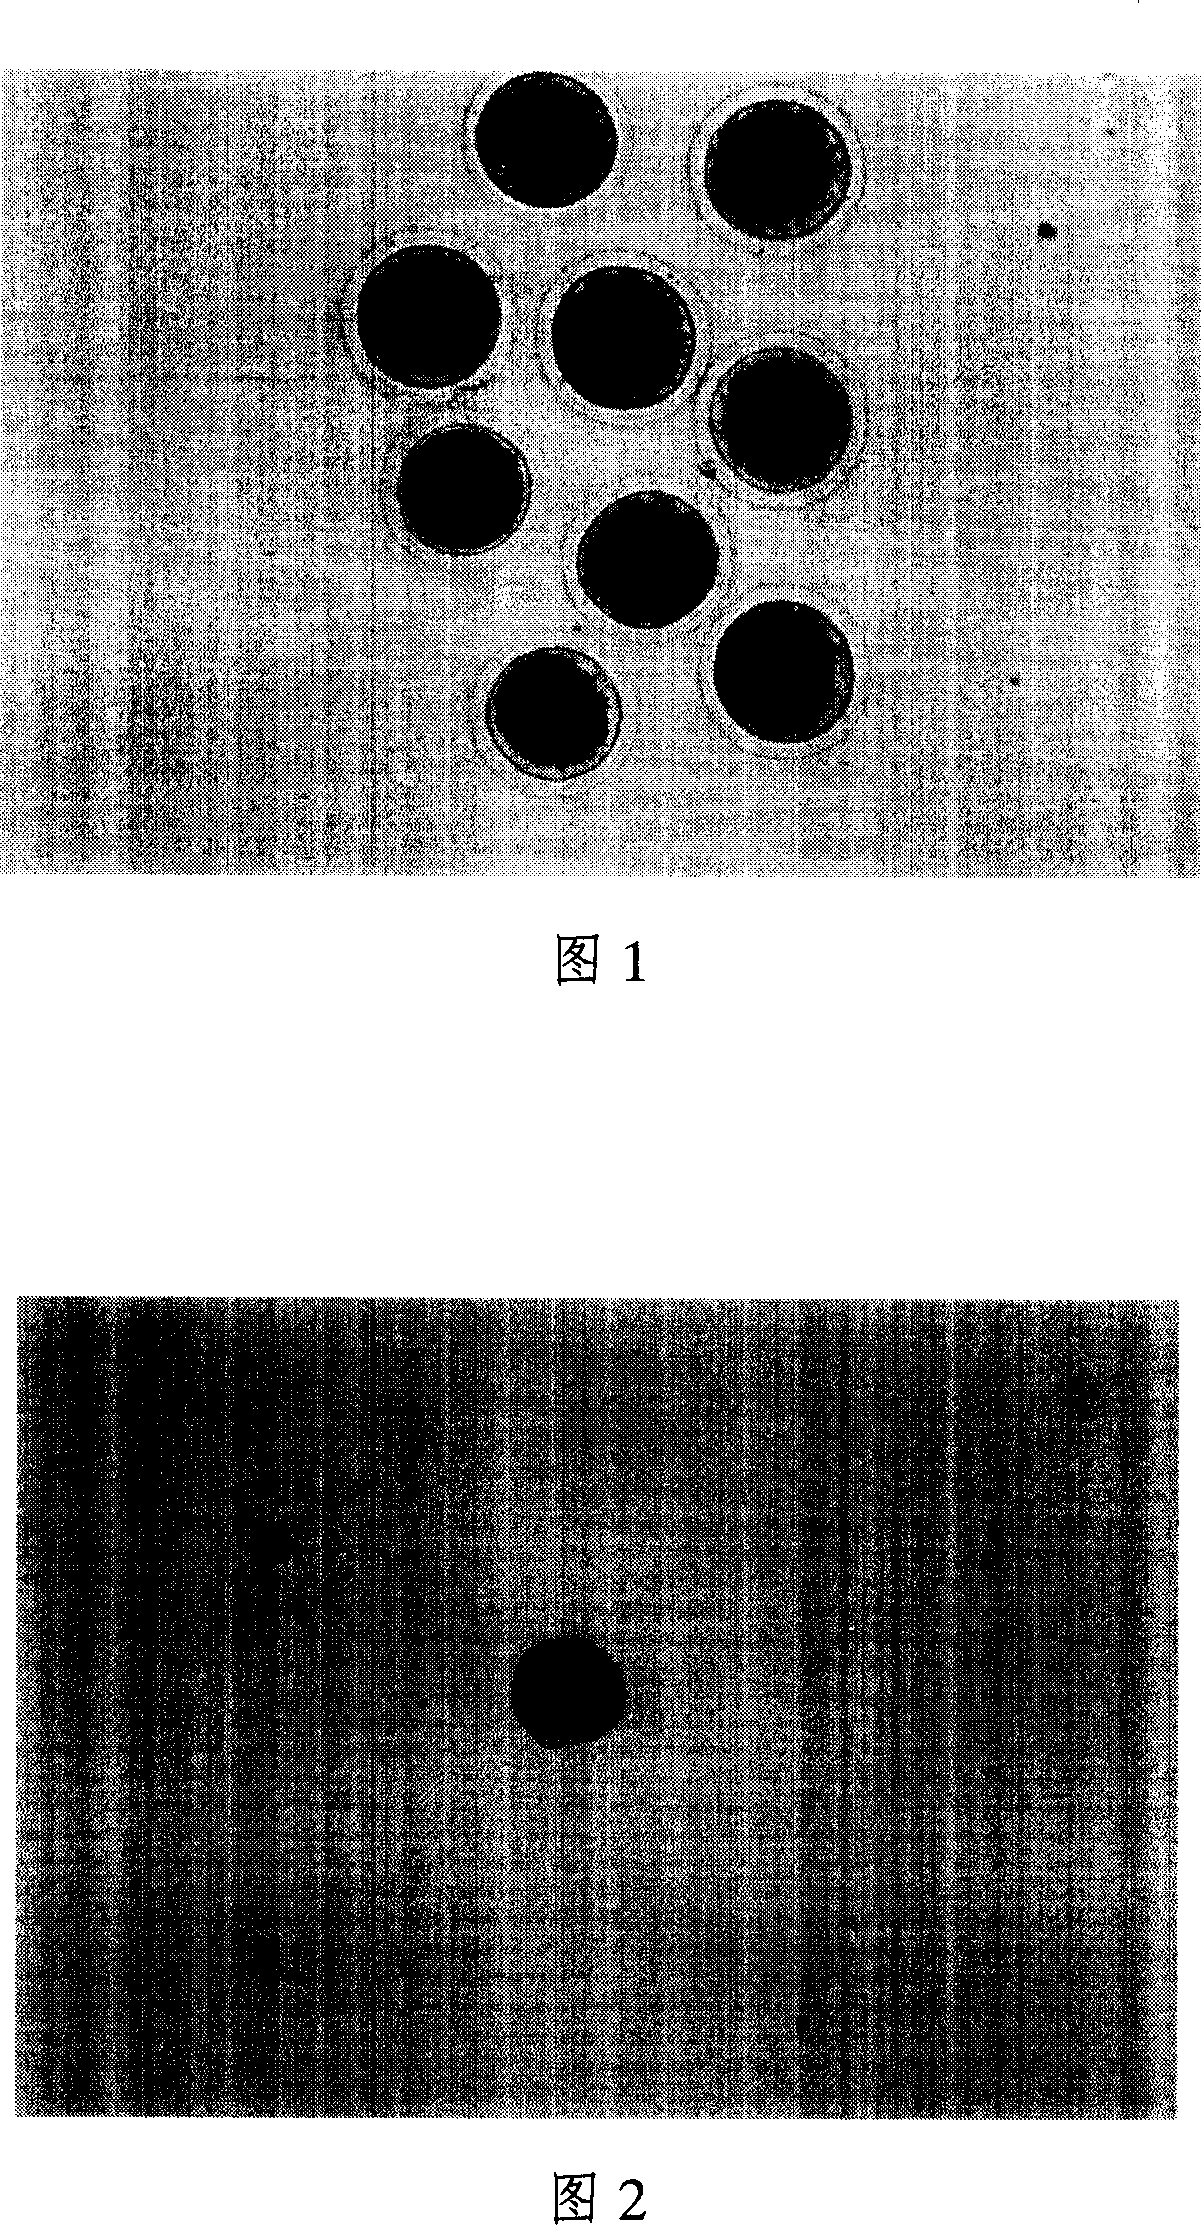 Method for slaking oocyte transparent tape